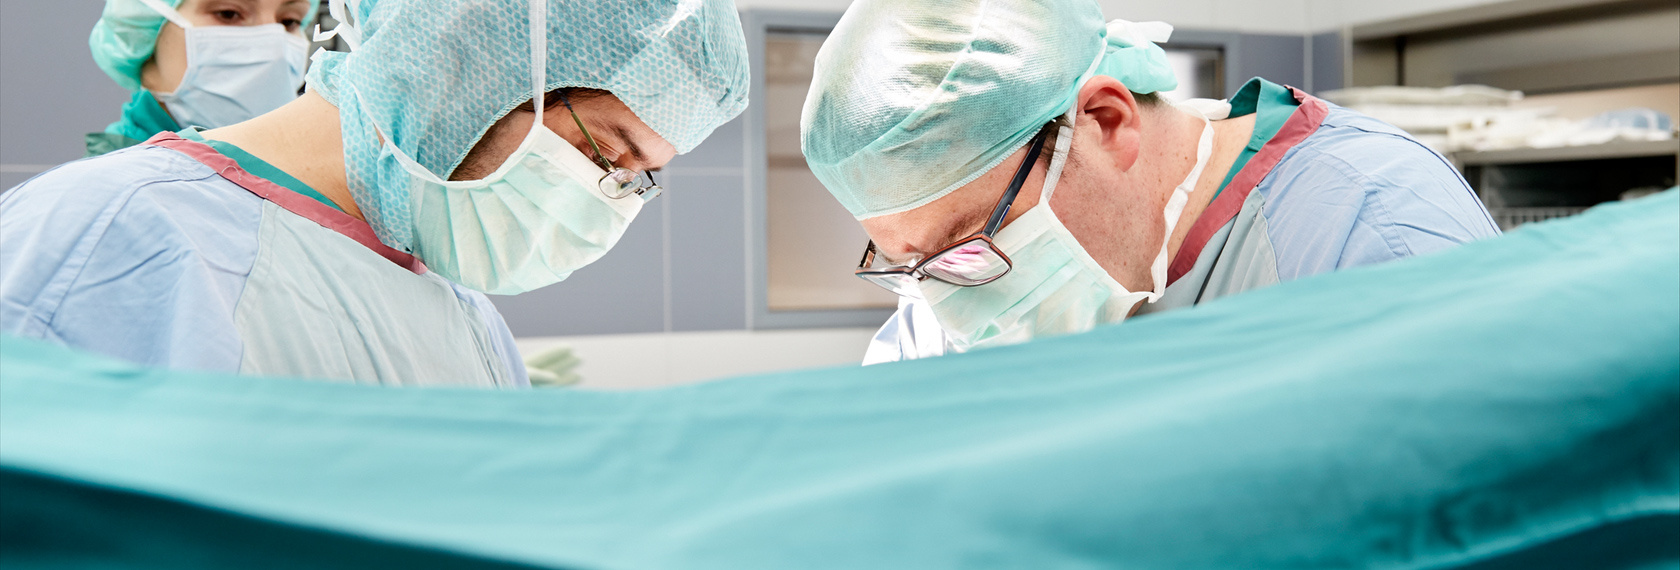 Dr. Scheuerlein operiert einen Patienten im OP-Saal